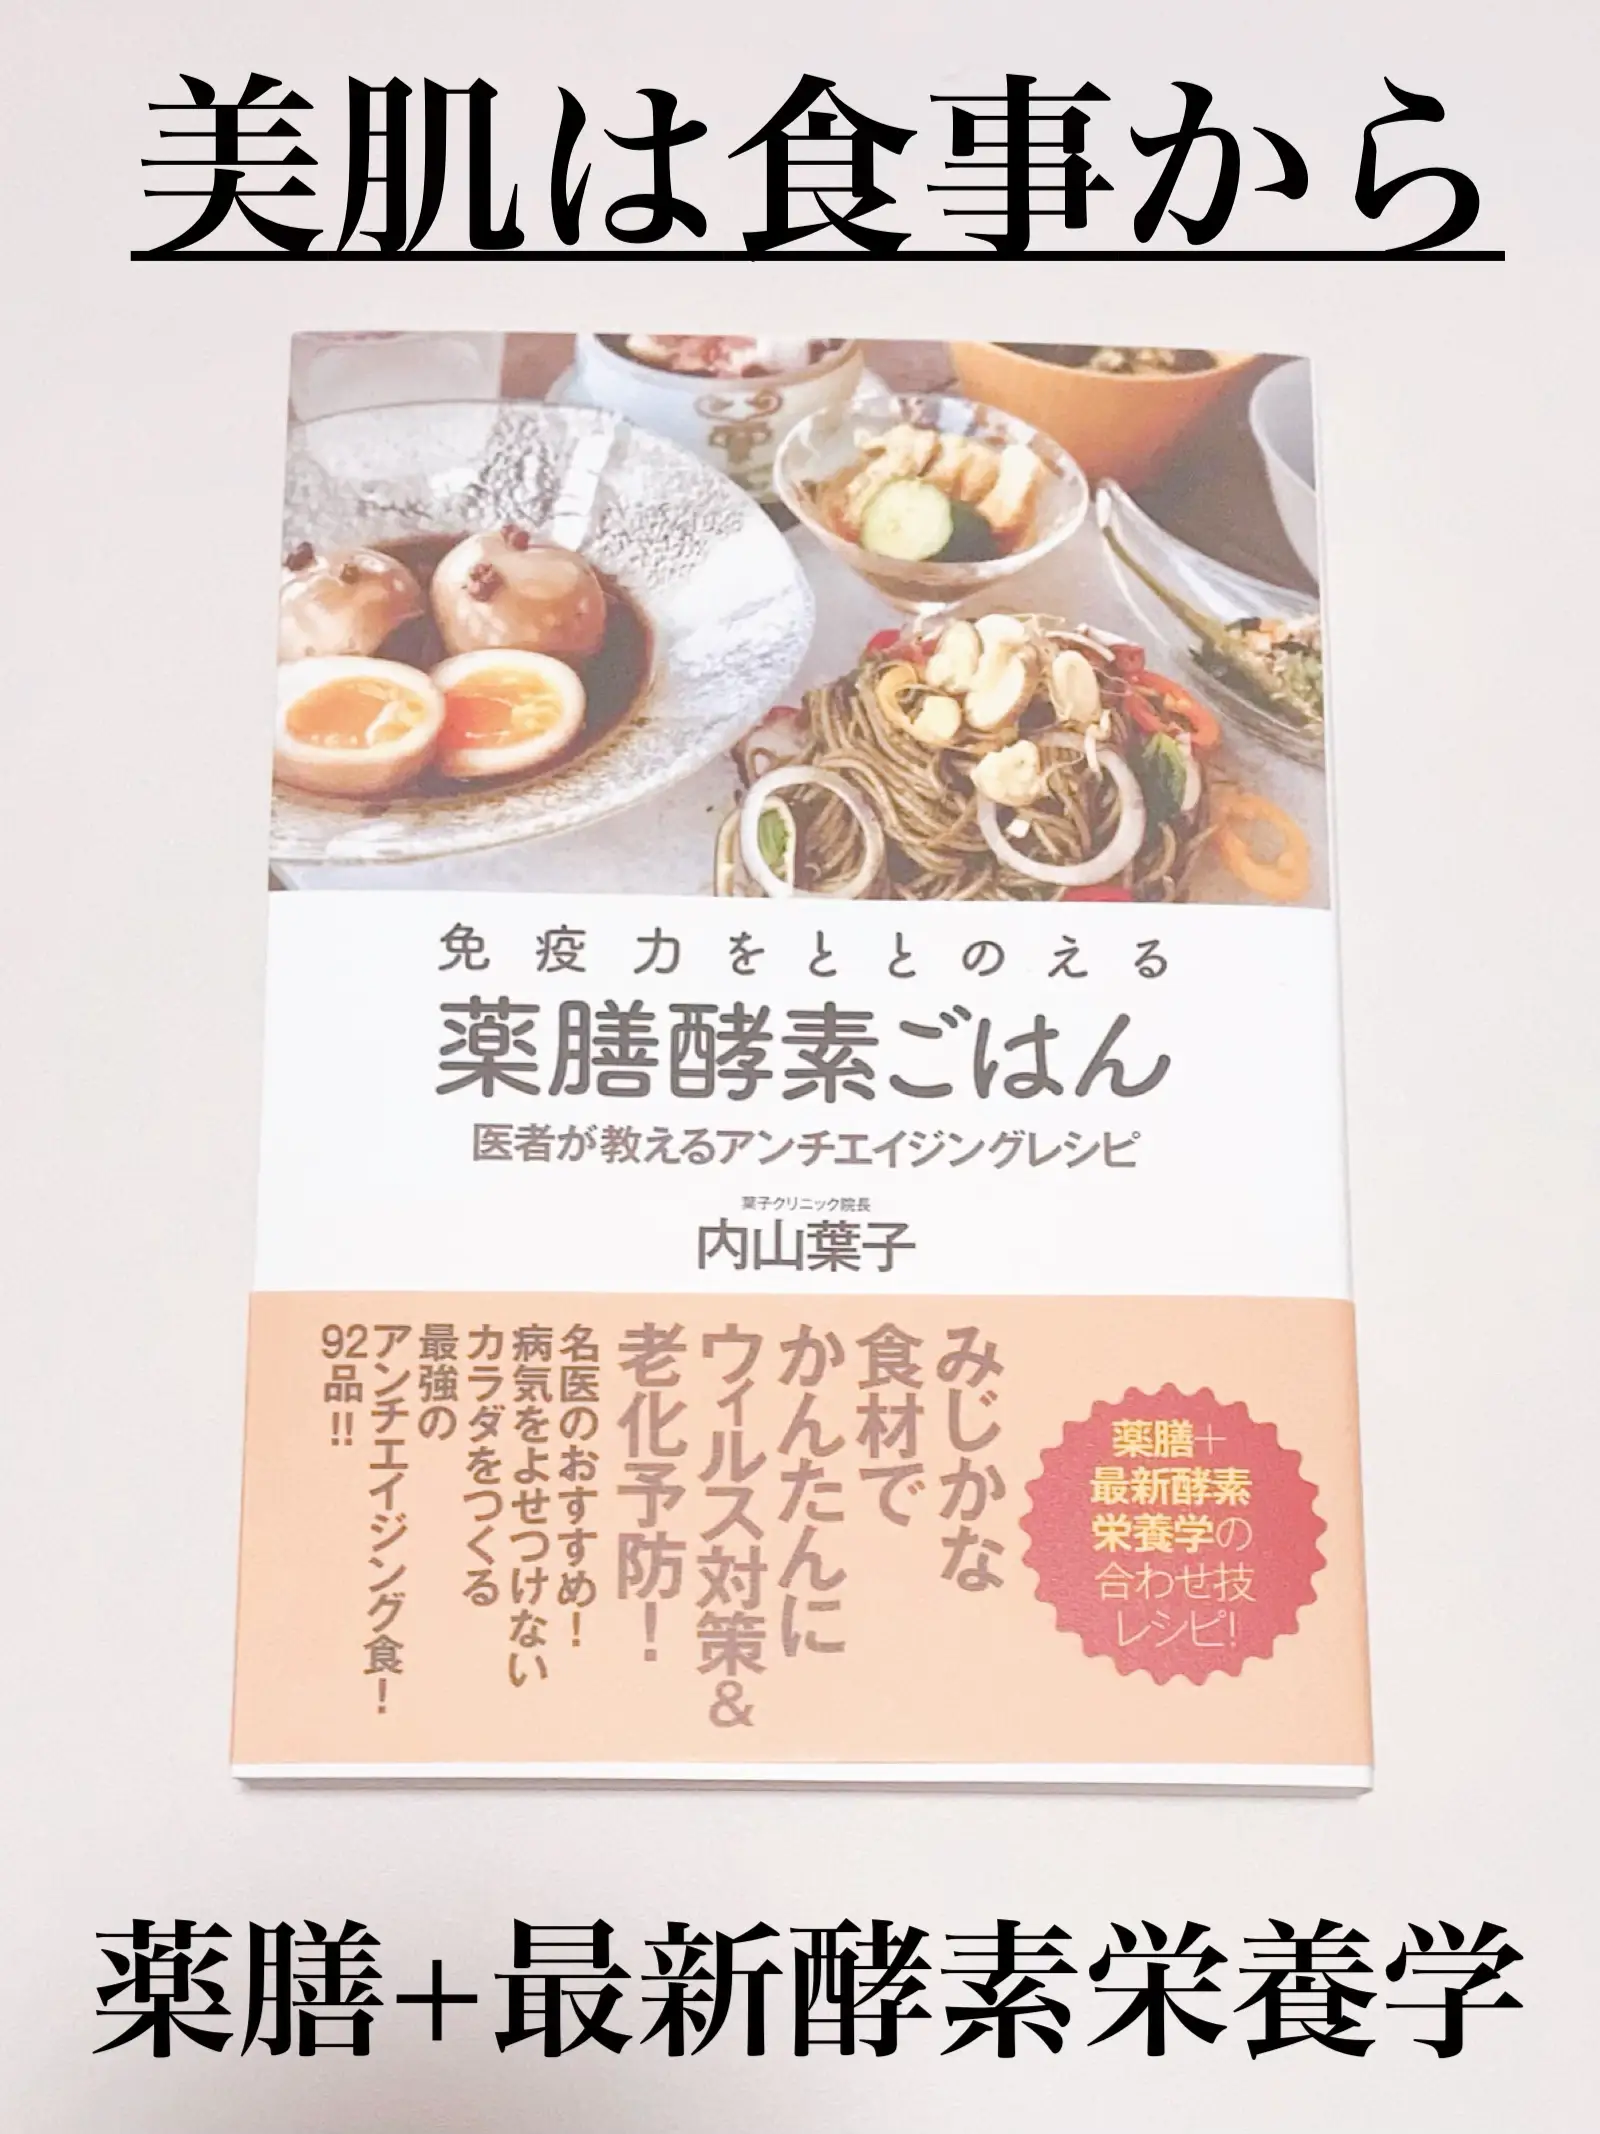 美肌は食事から/お医者さんが書いたレシピ本🍚 | yunaコスメが投稿した